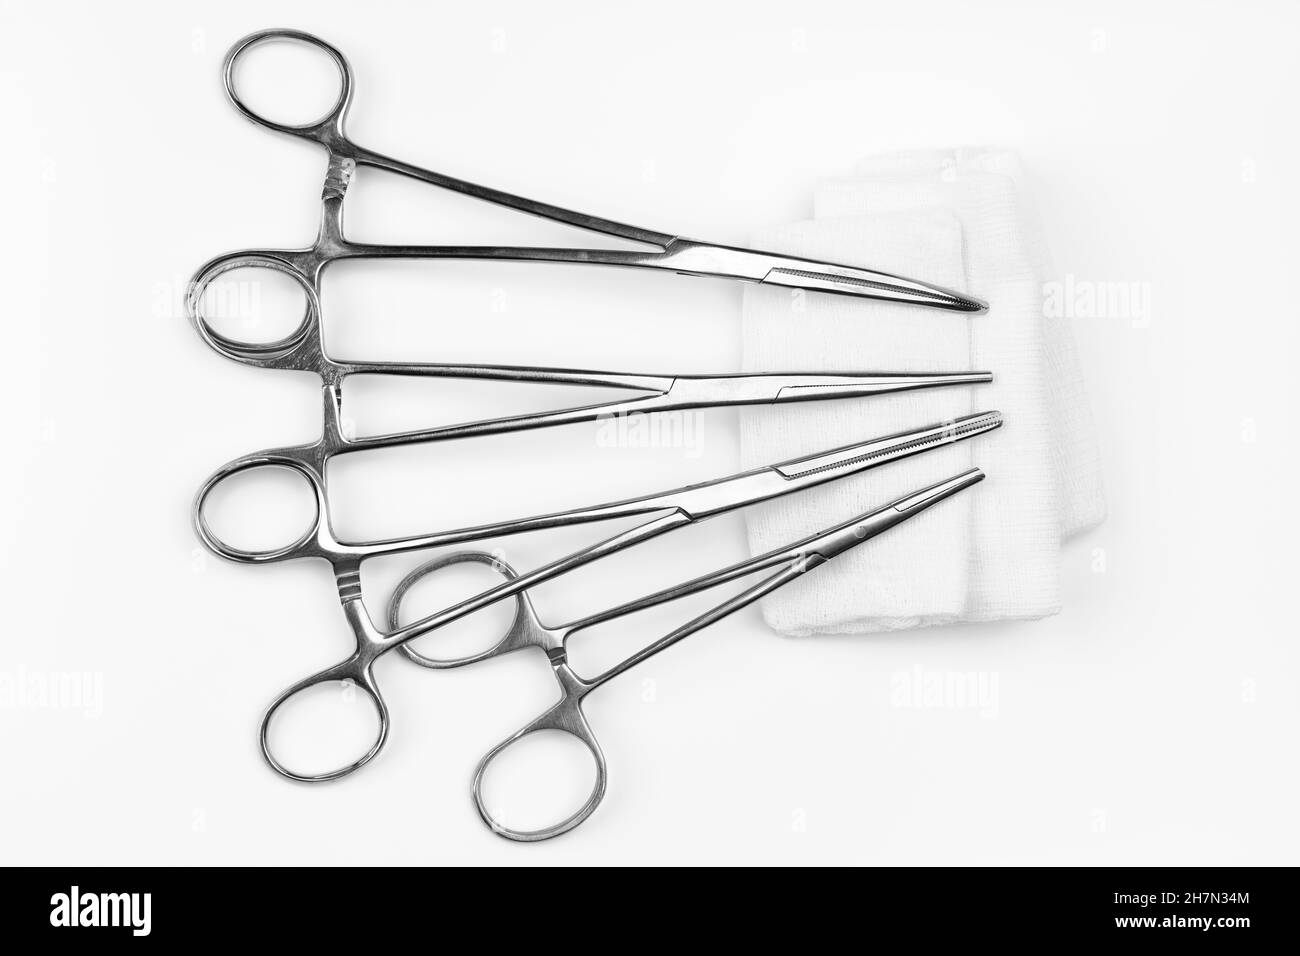 Viele rostfreie chirurgische Nadeltreiber, die auf einem weißen sterilen Gazestieb liegen. Nadelhalter für medizinische Instrumente auf weißem Hintergrund Stockfoto